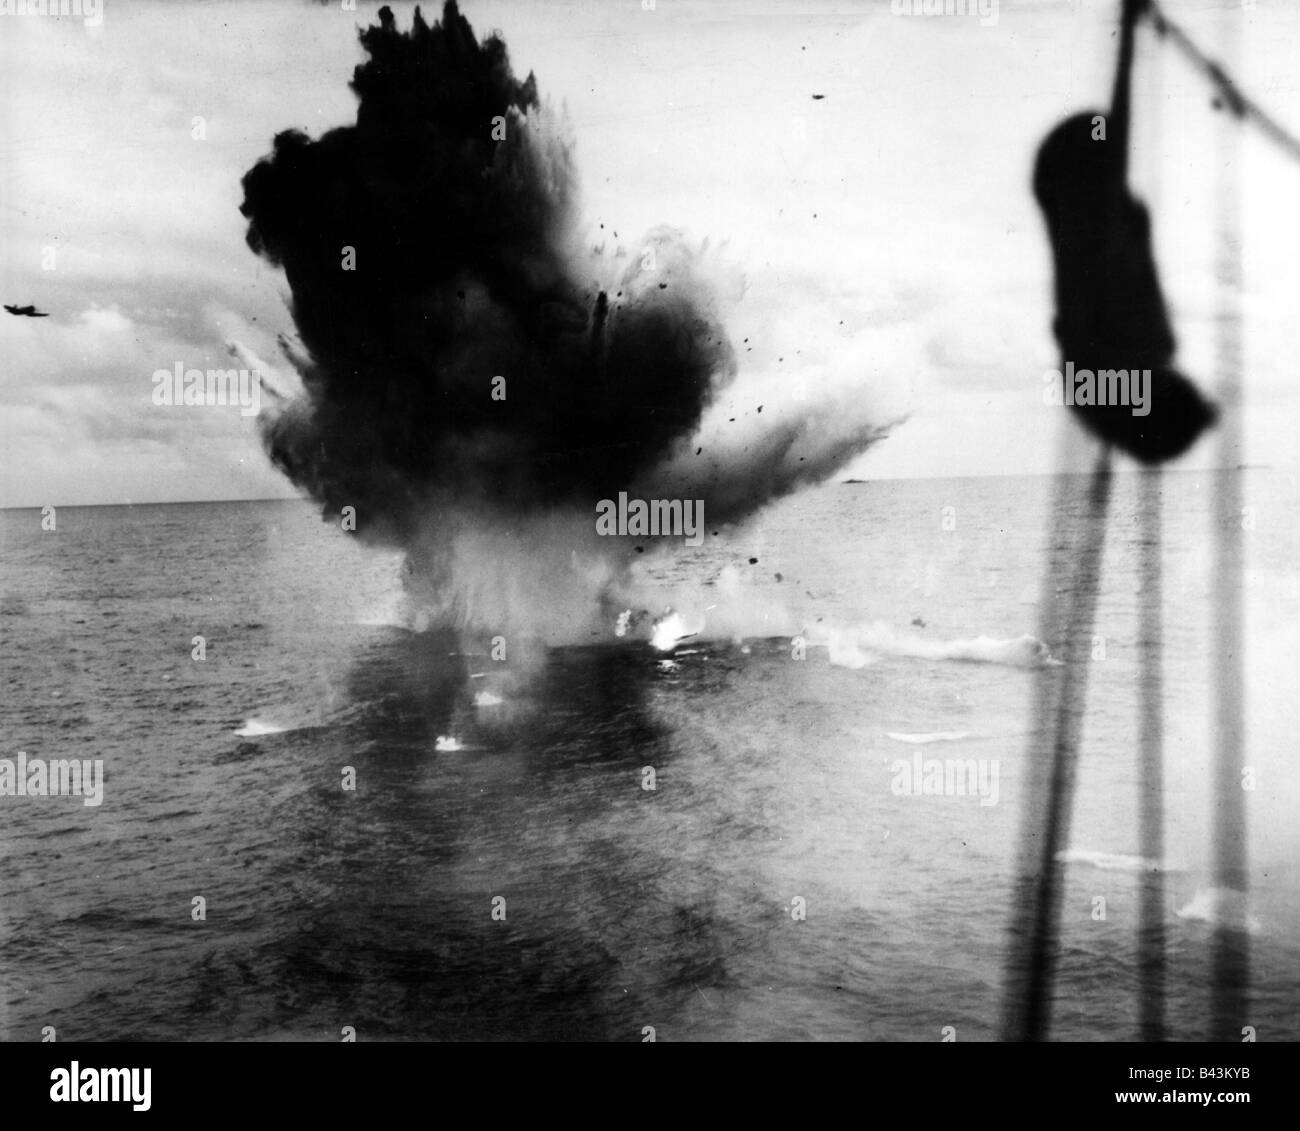 Eventi, Seconda guerra mondiale / WW II, Pacifico, guerra navale, aerei giapponesi Kamikaze manca il suo obiettivo e si schianta in acqua, 1945, Foto Stock